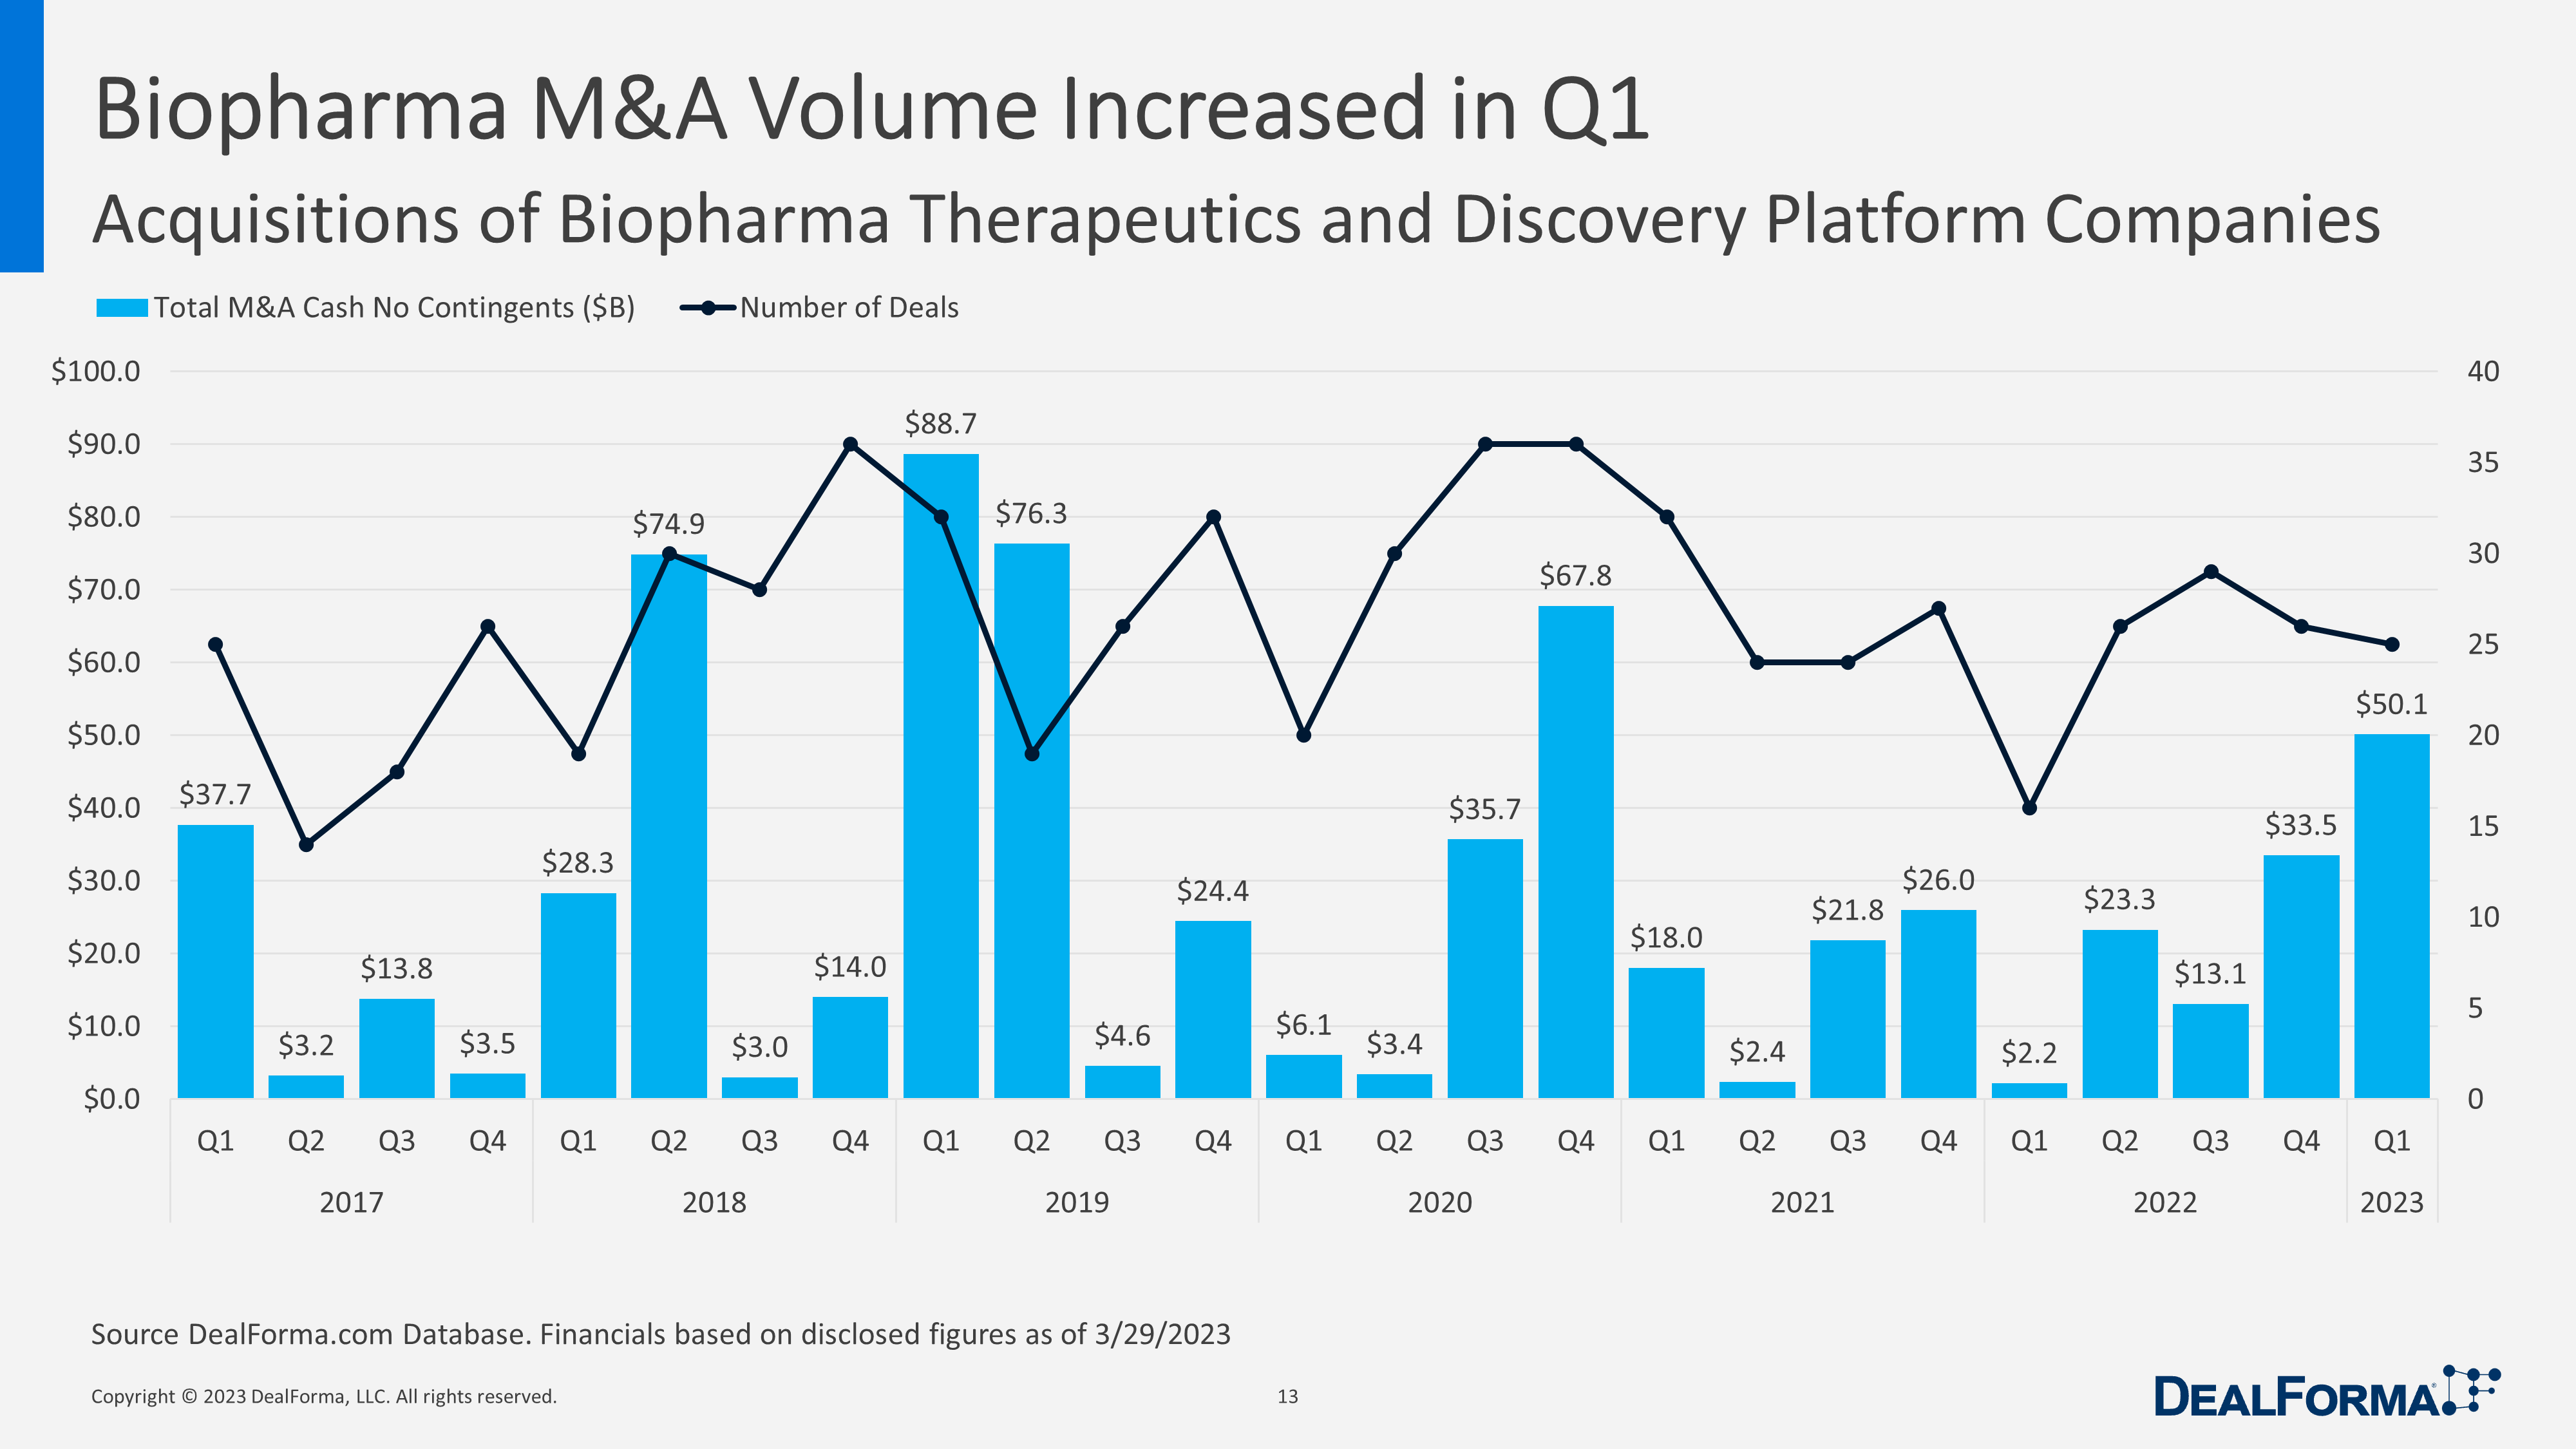 Biopharma M&A Volume Increased in Q1